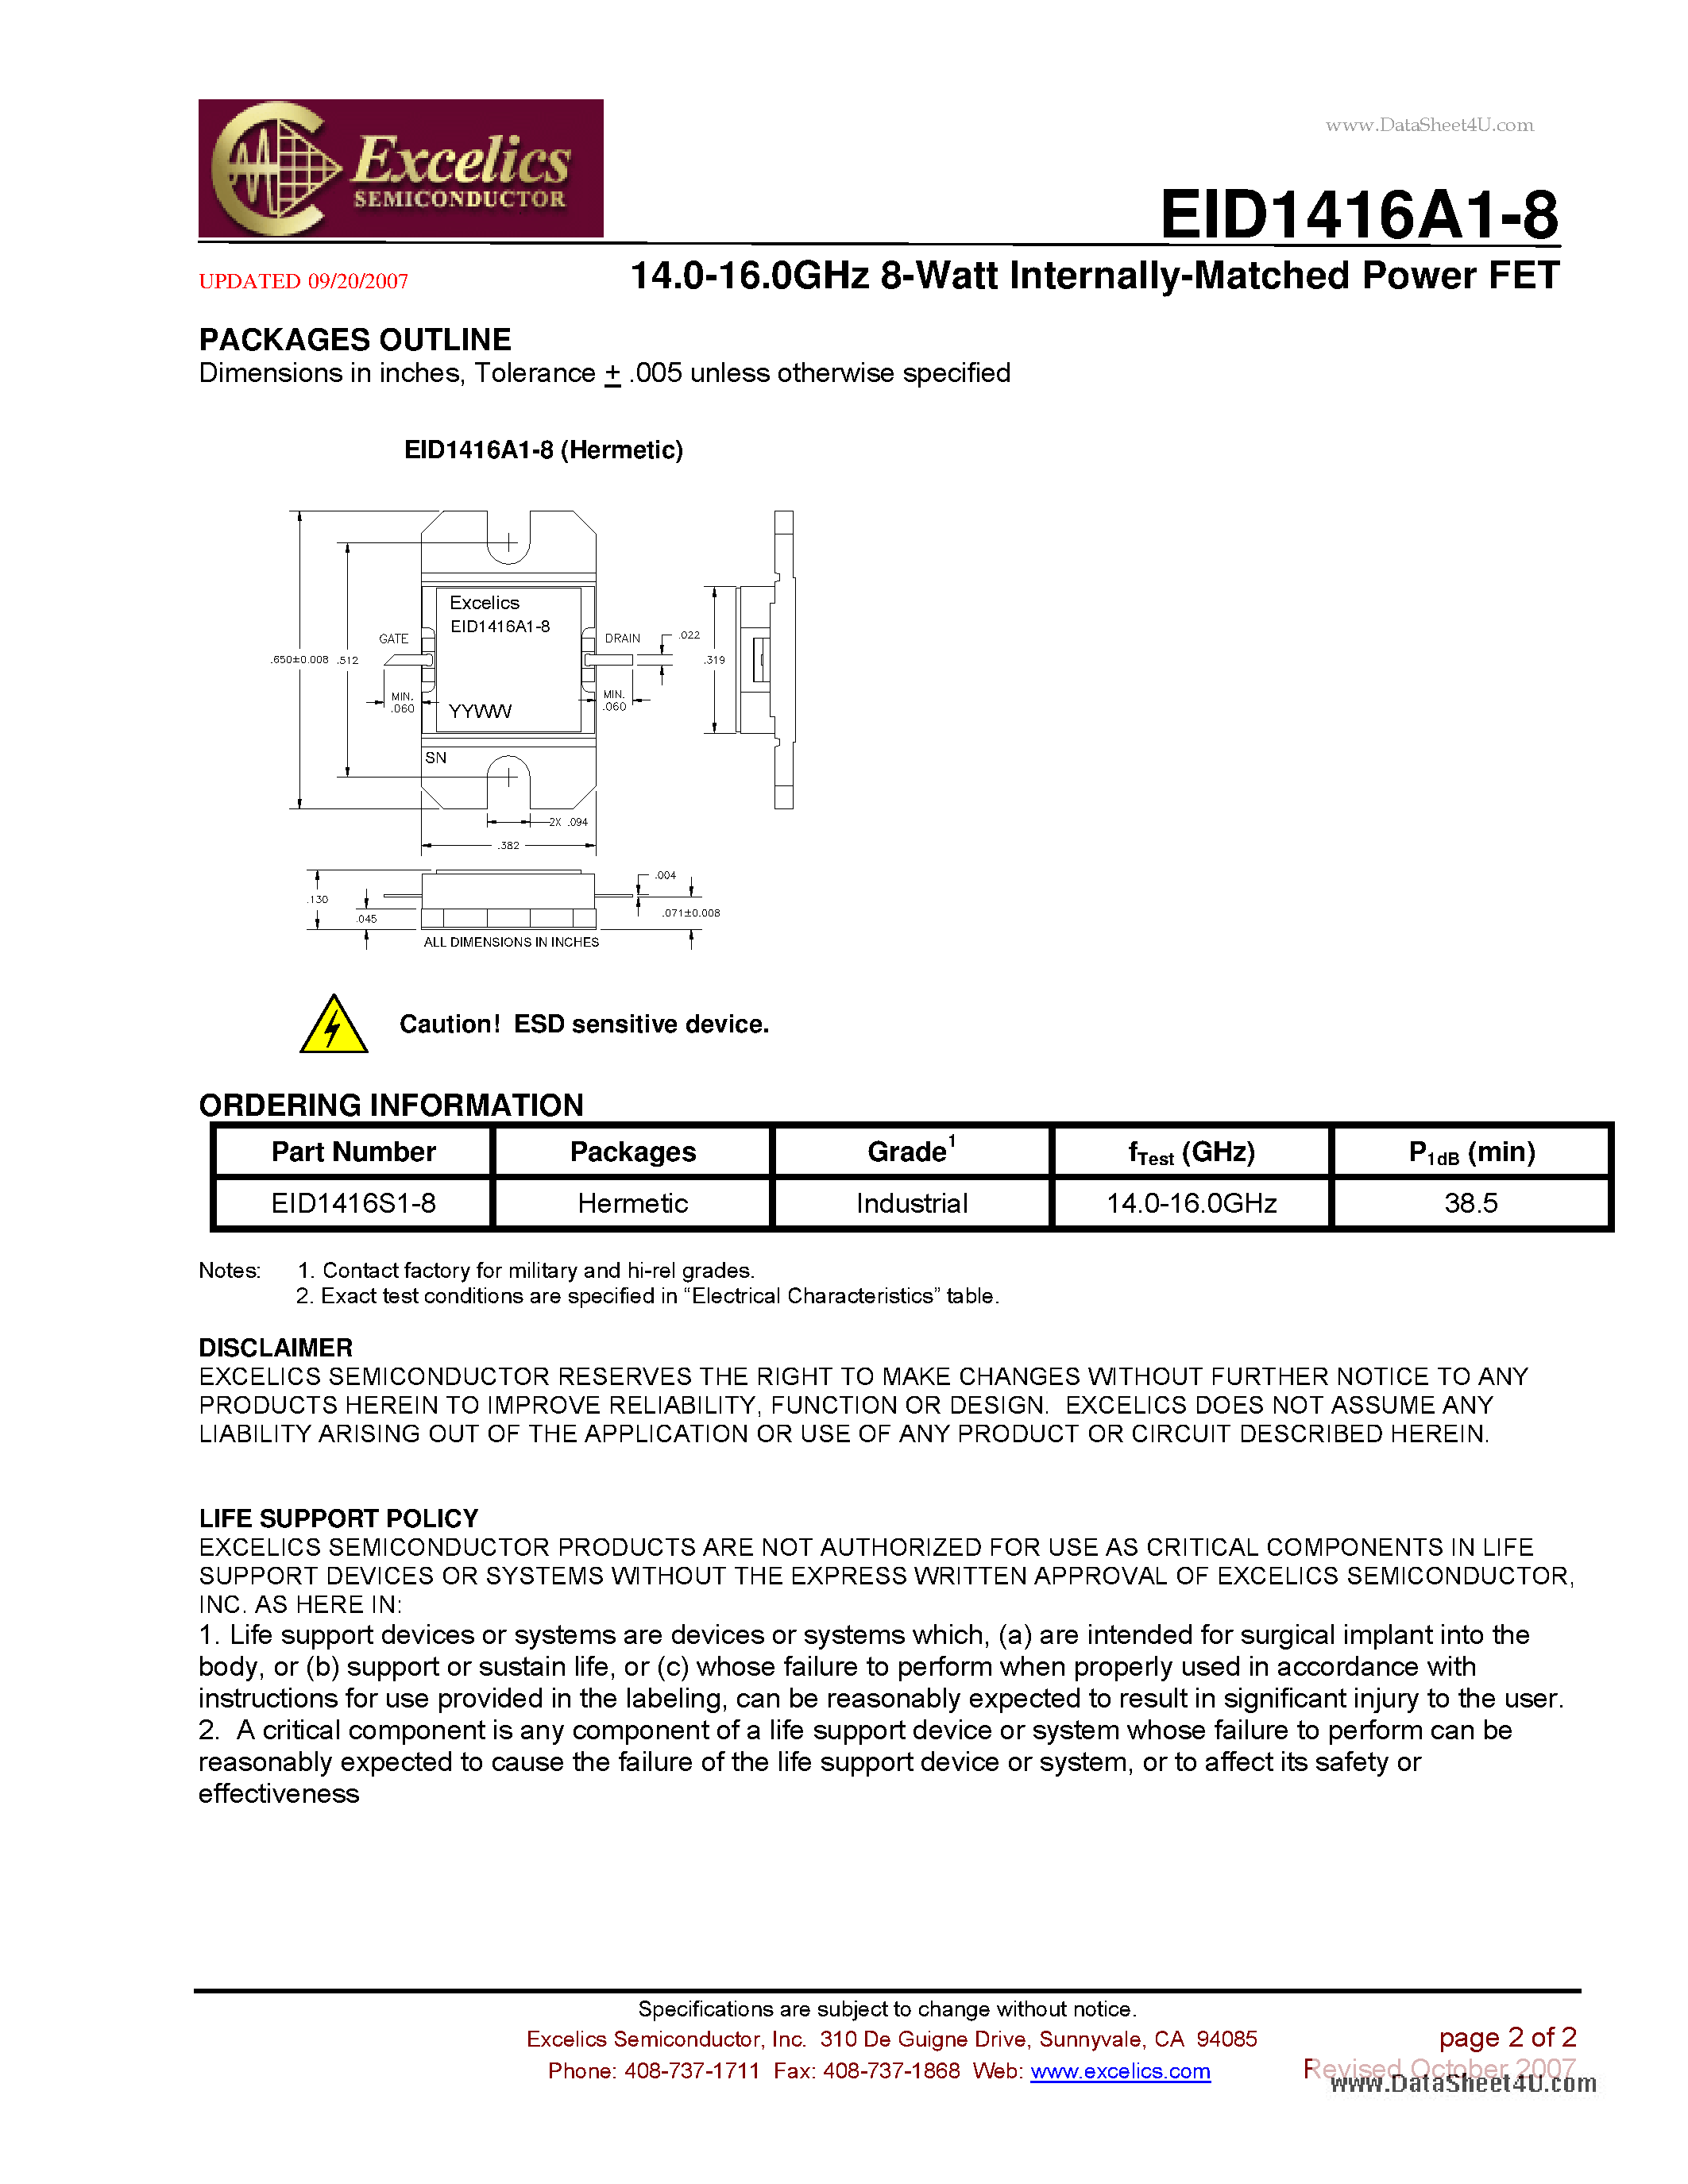 Datasheet EID1416A1-8 - 14.0-16.0 GHz 8-Watt Internally-Matched Power FET page 2